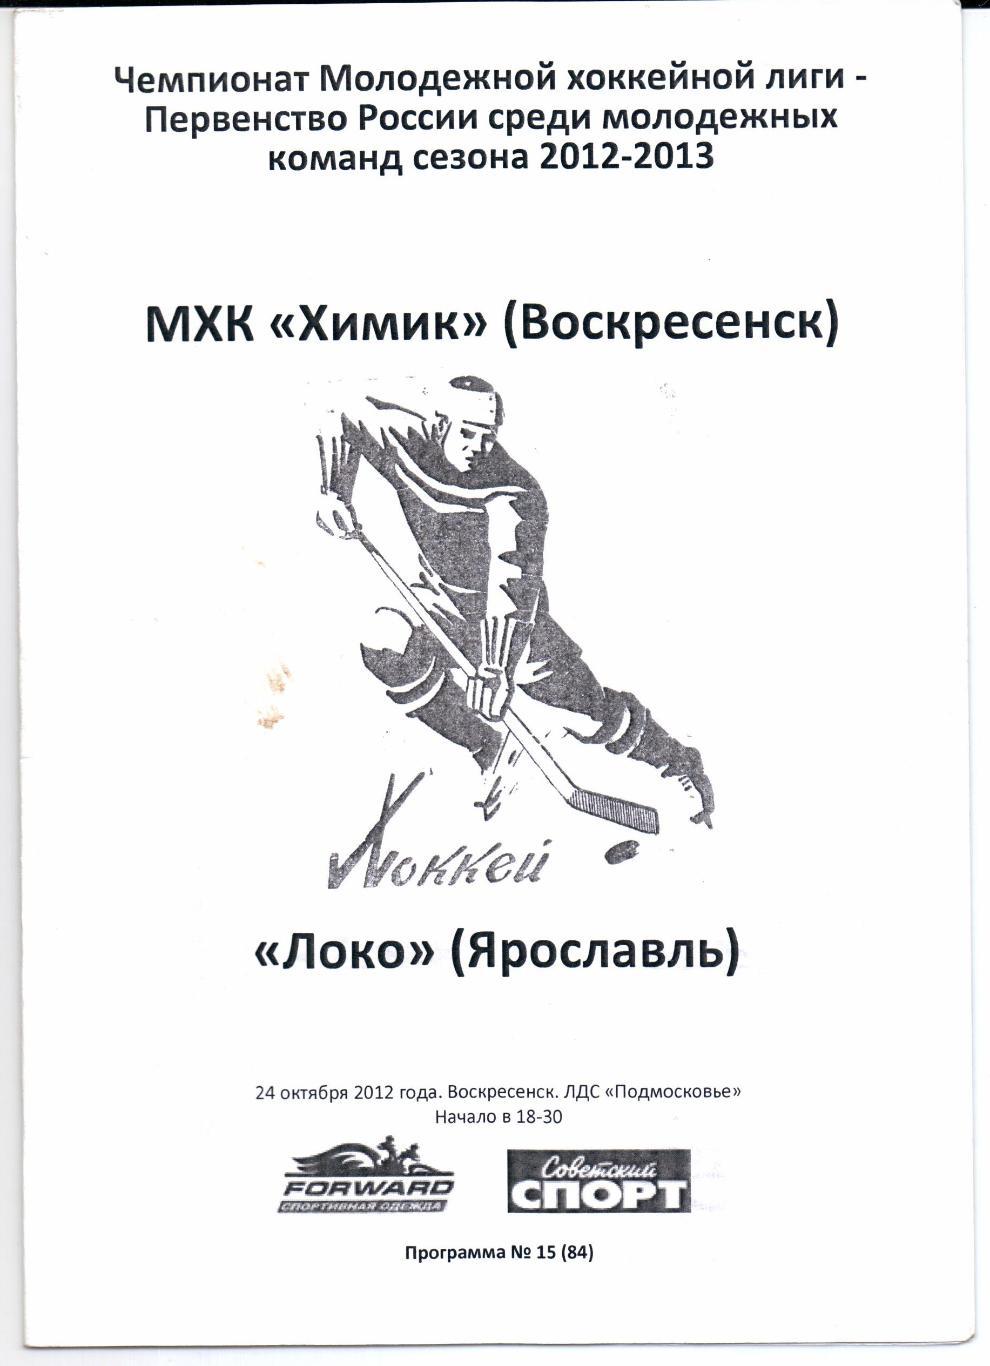 МХК 2012/2013 Химик(Воскресенск)-Локо(Ярос лавль)24.10.2012